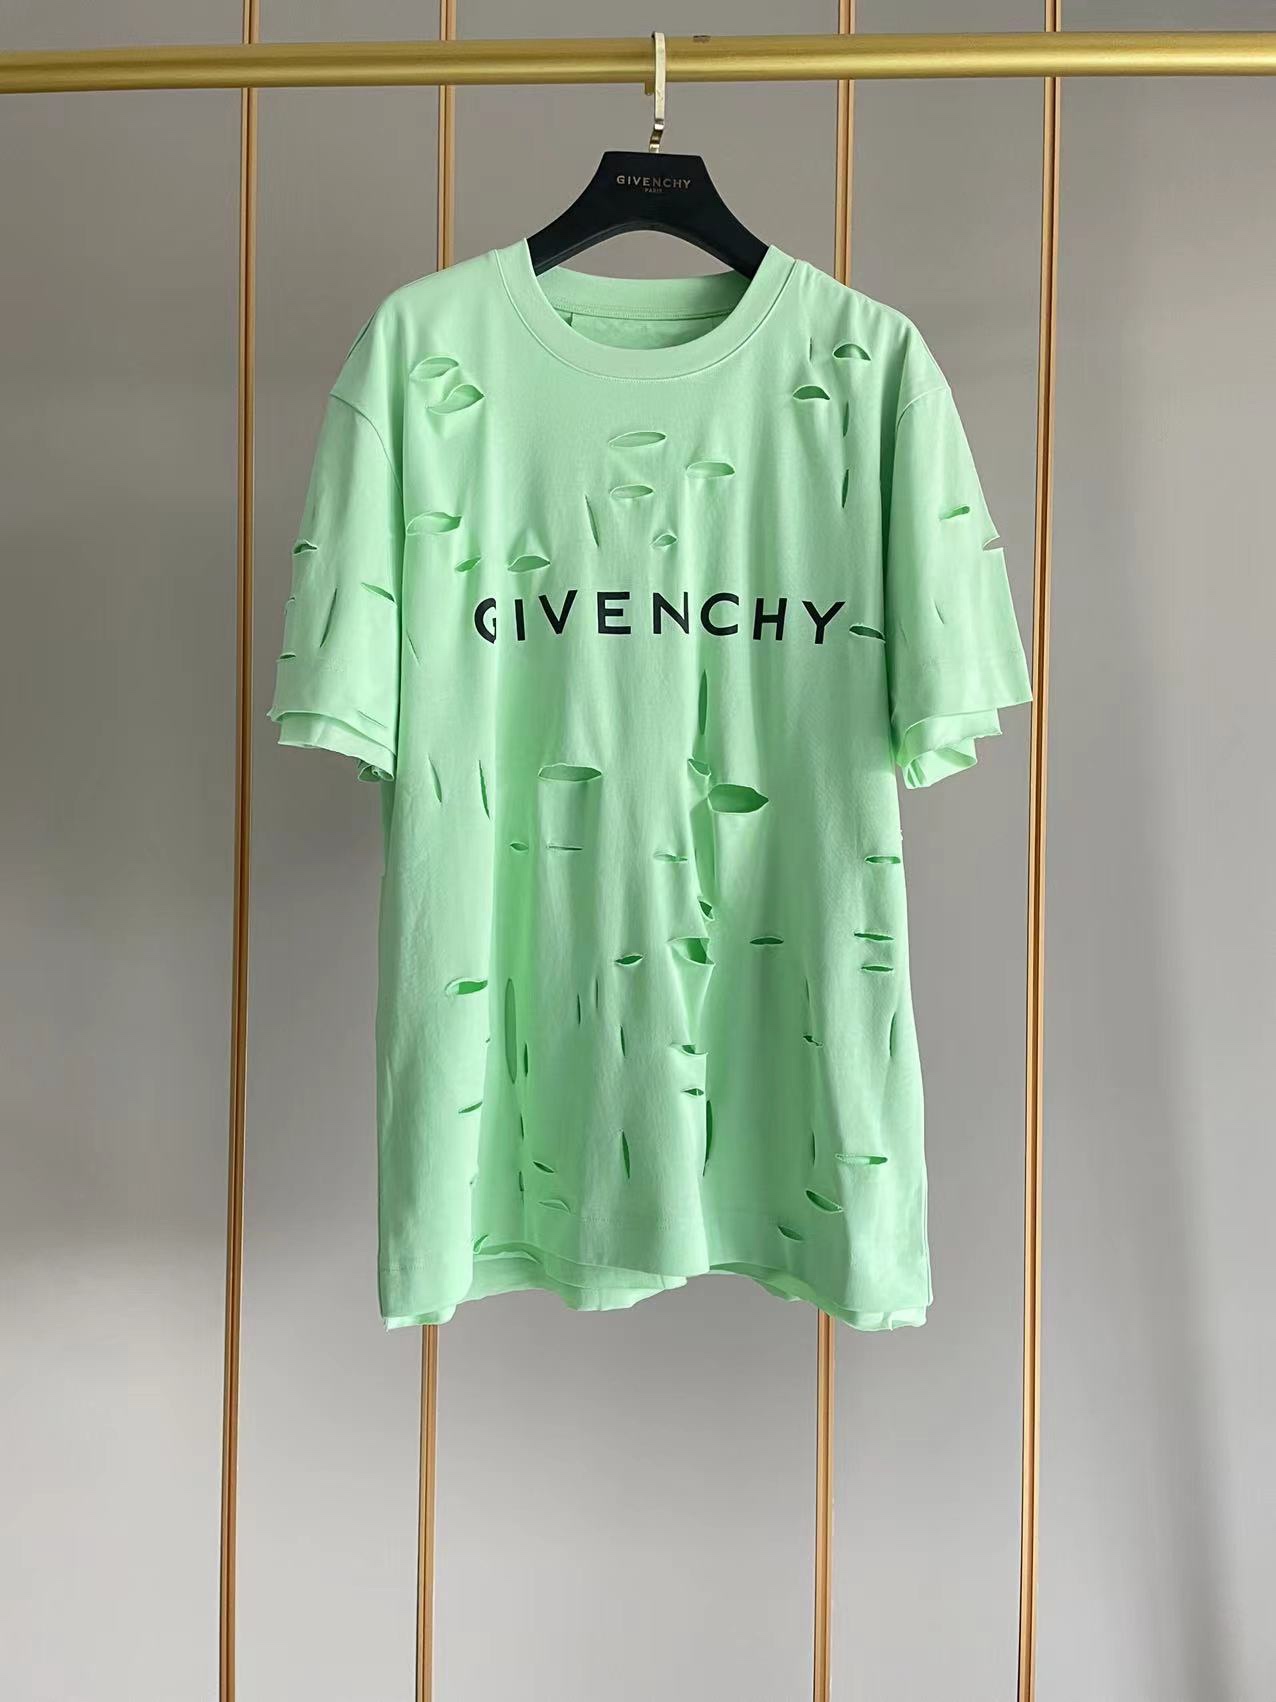 ジバンシィ トップス偽物 純綿 Tシャツ 半袖 シンプル ダメージ加工のデザイン 5色可選 グリーン_1